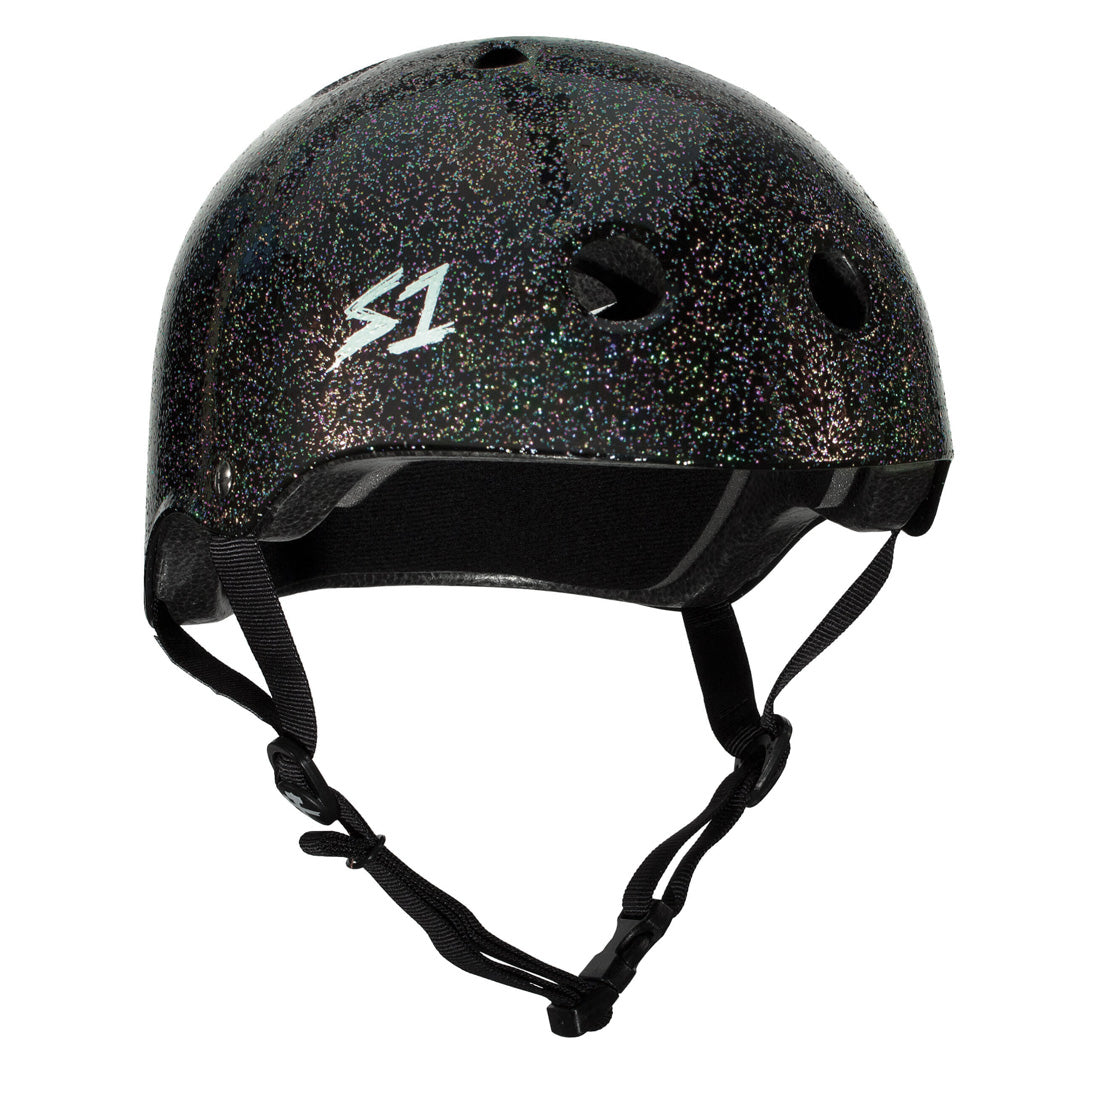 S-One Lifer Helmet - Black Glitter Helmets